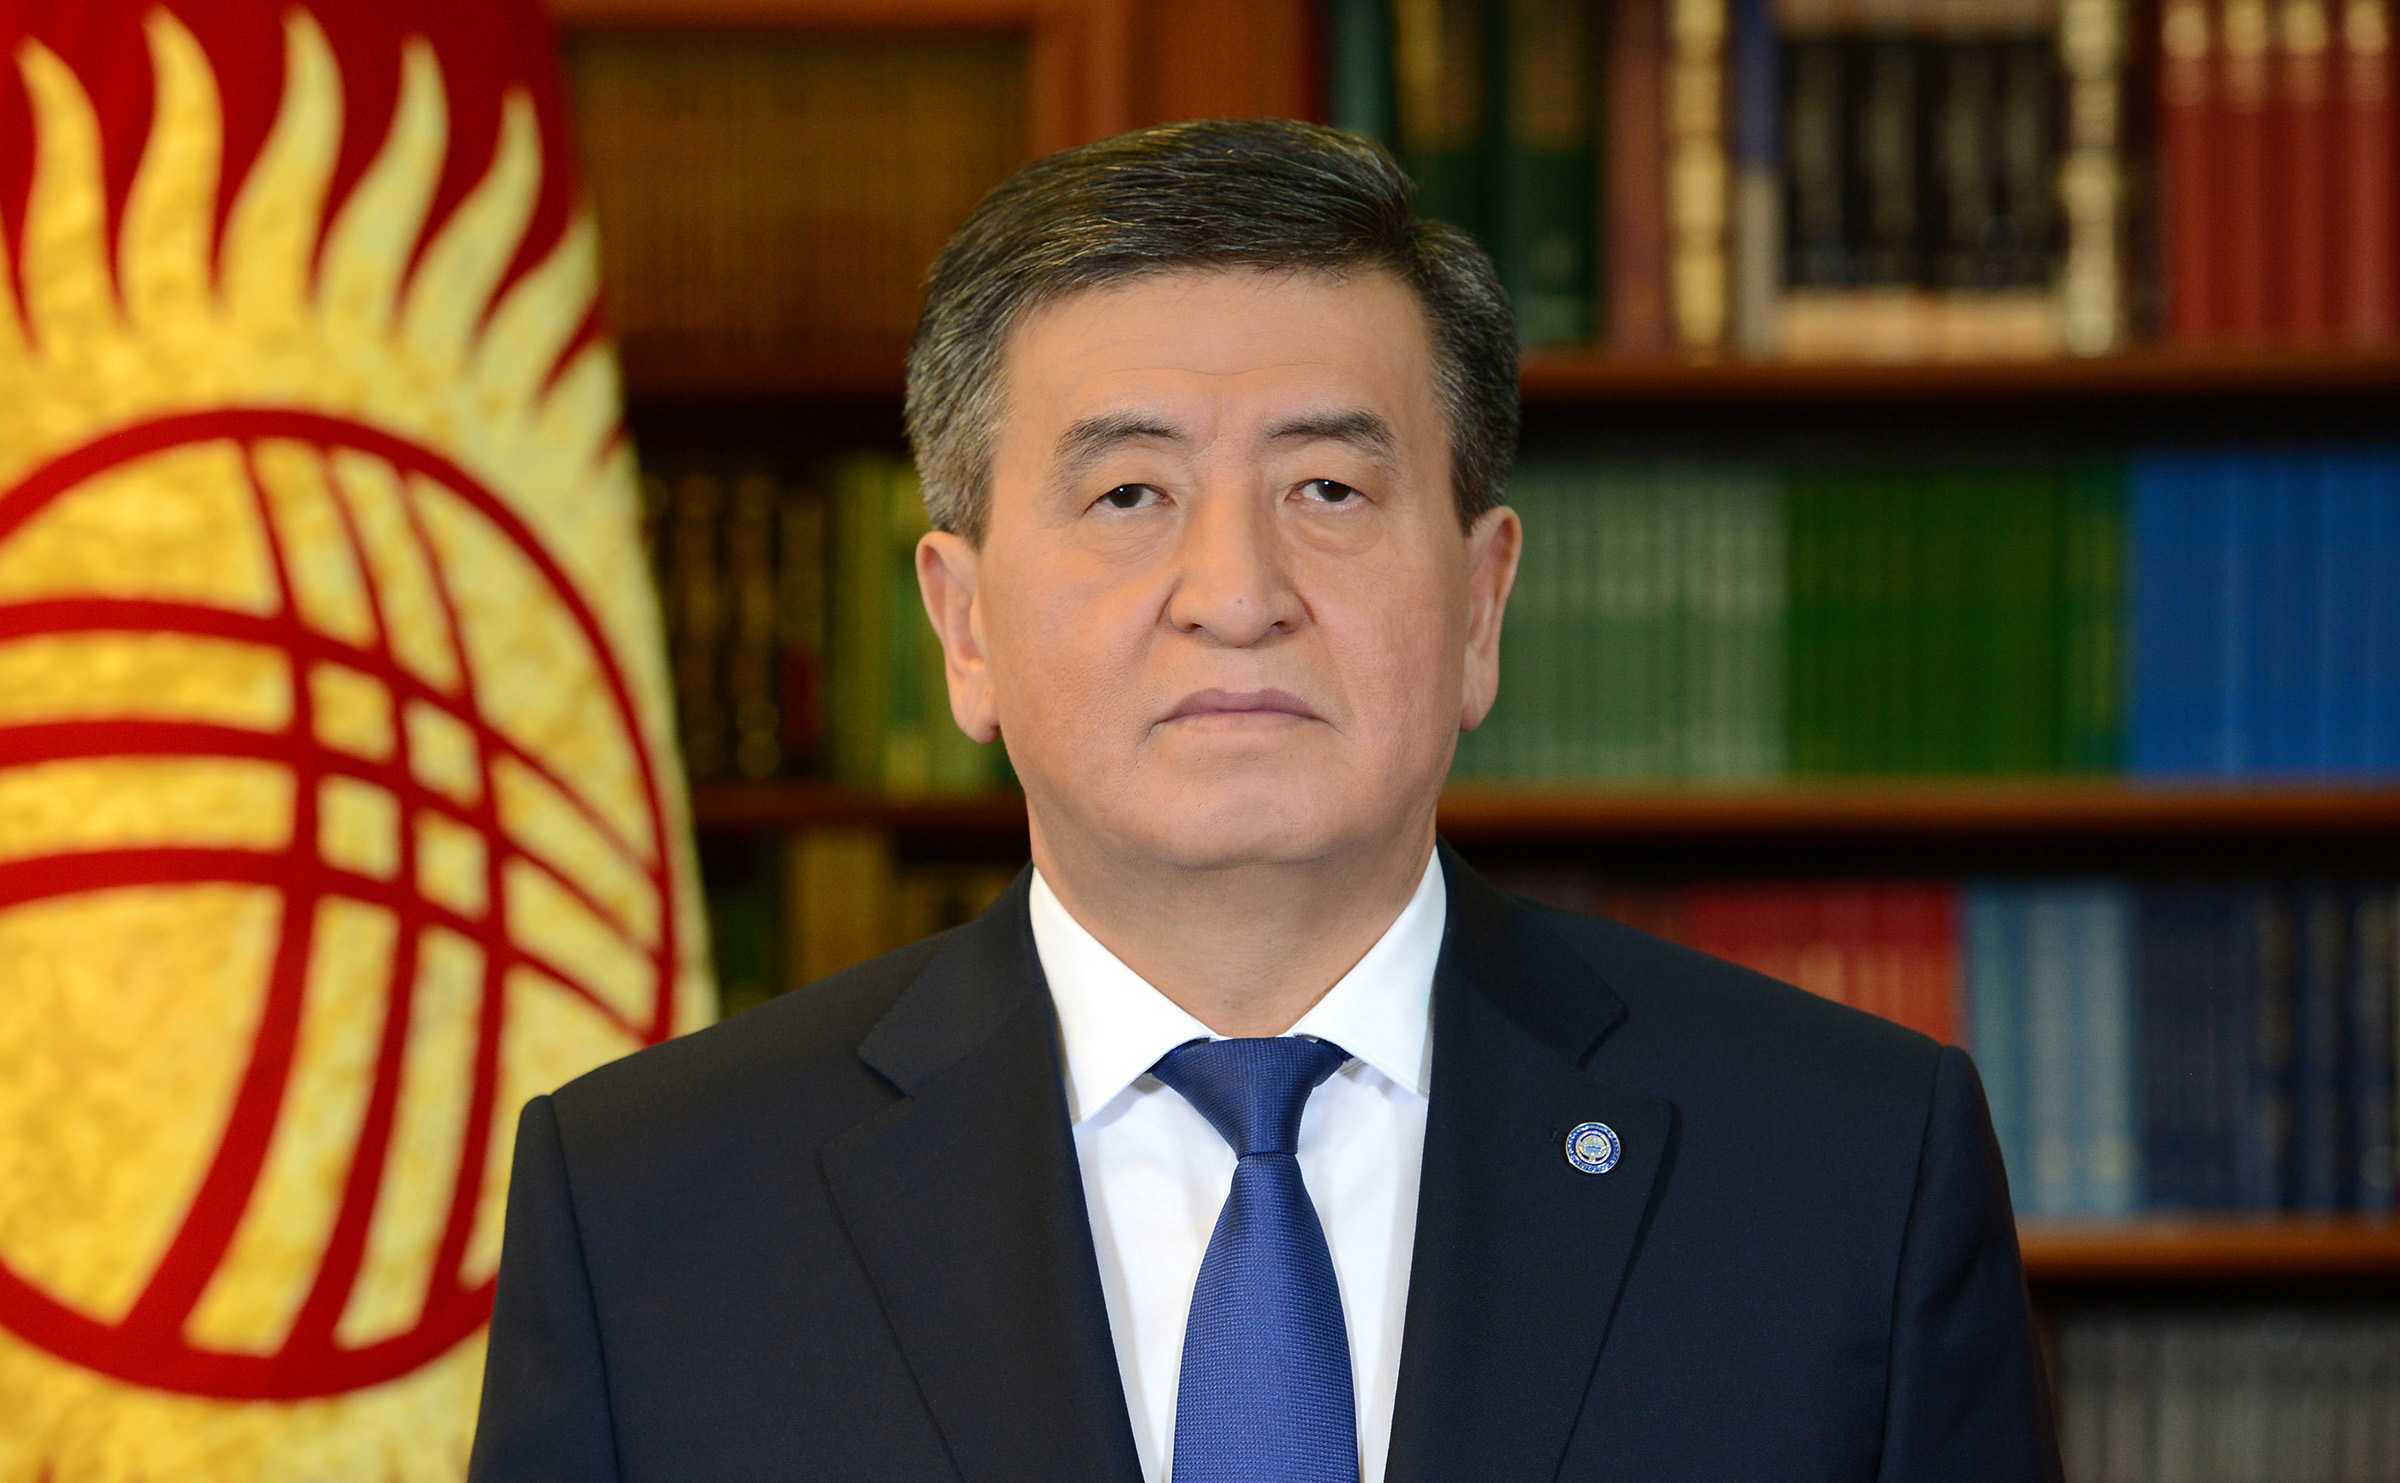 Сооронбай жээнбеков – новый президент кыргызстана. что о нём известно?